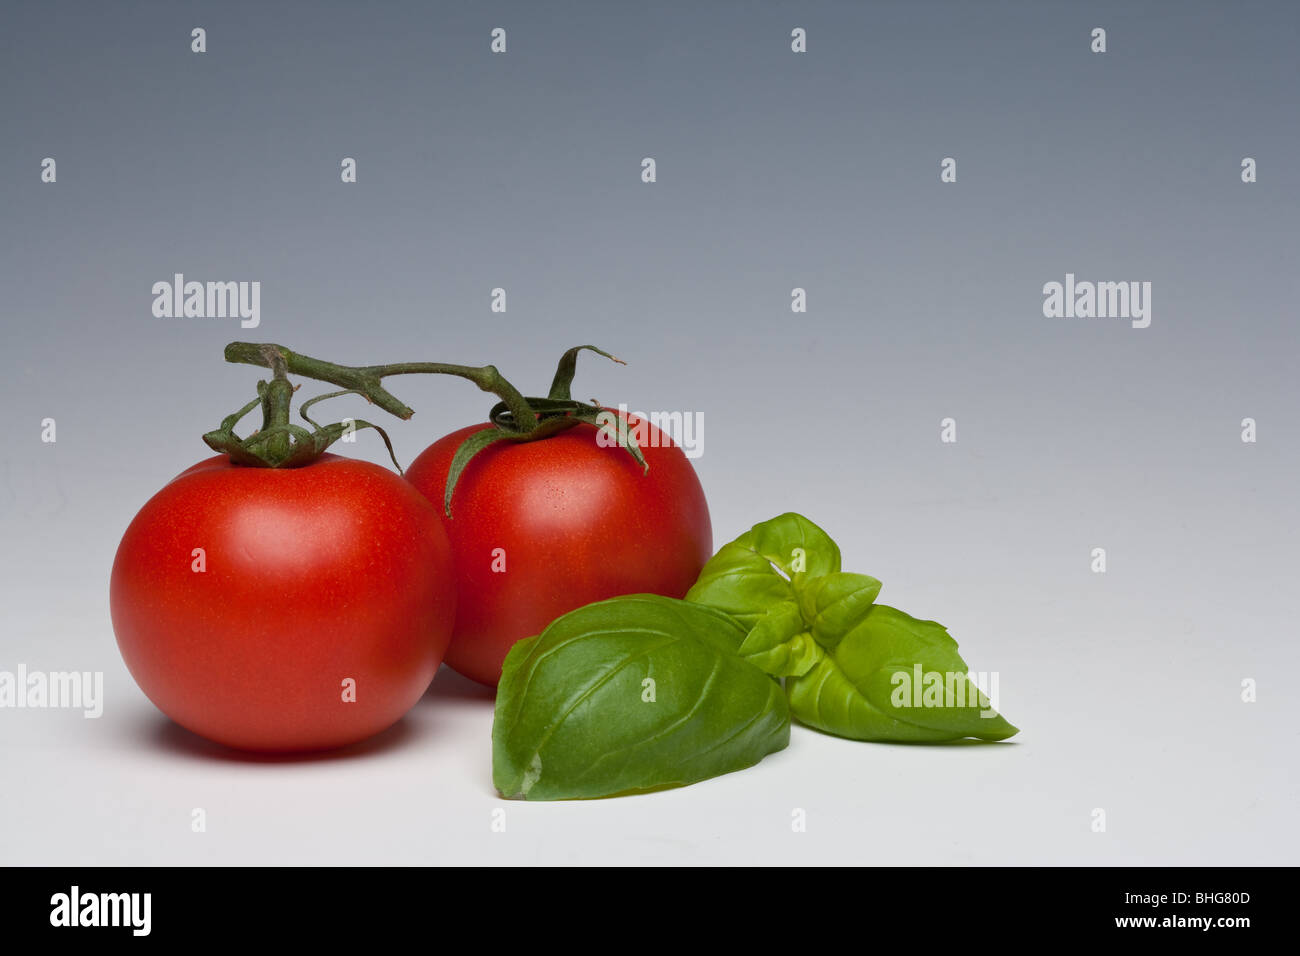 Tomaten und Basilikum Kraut auf einem einfarbigen Hintergrund Stockfoto